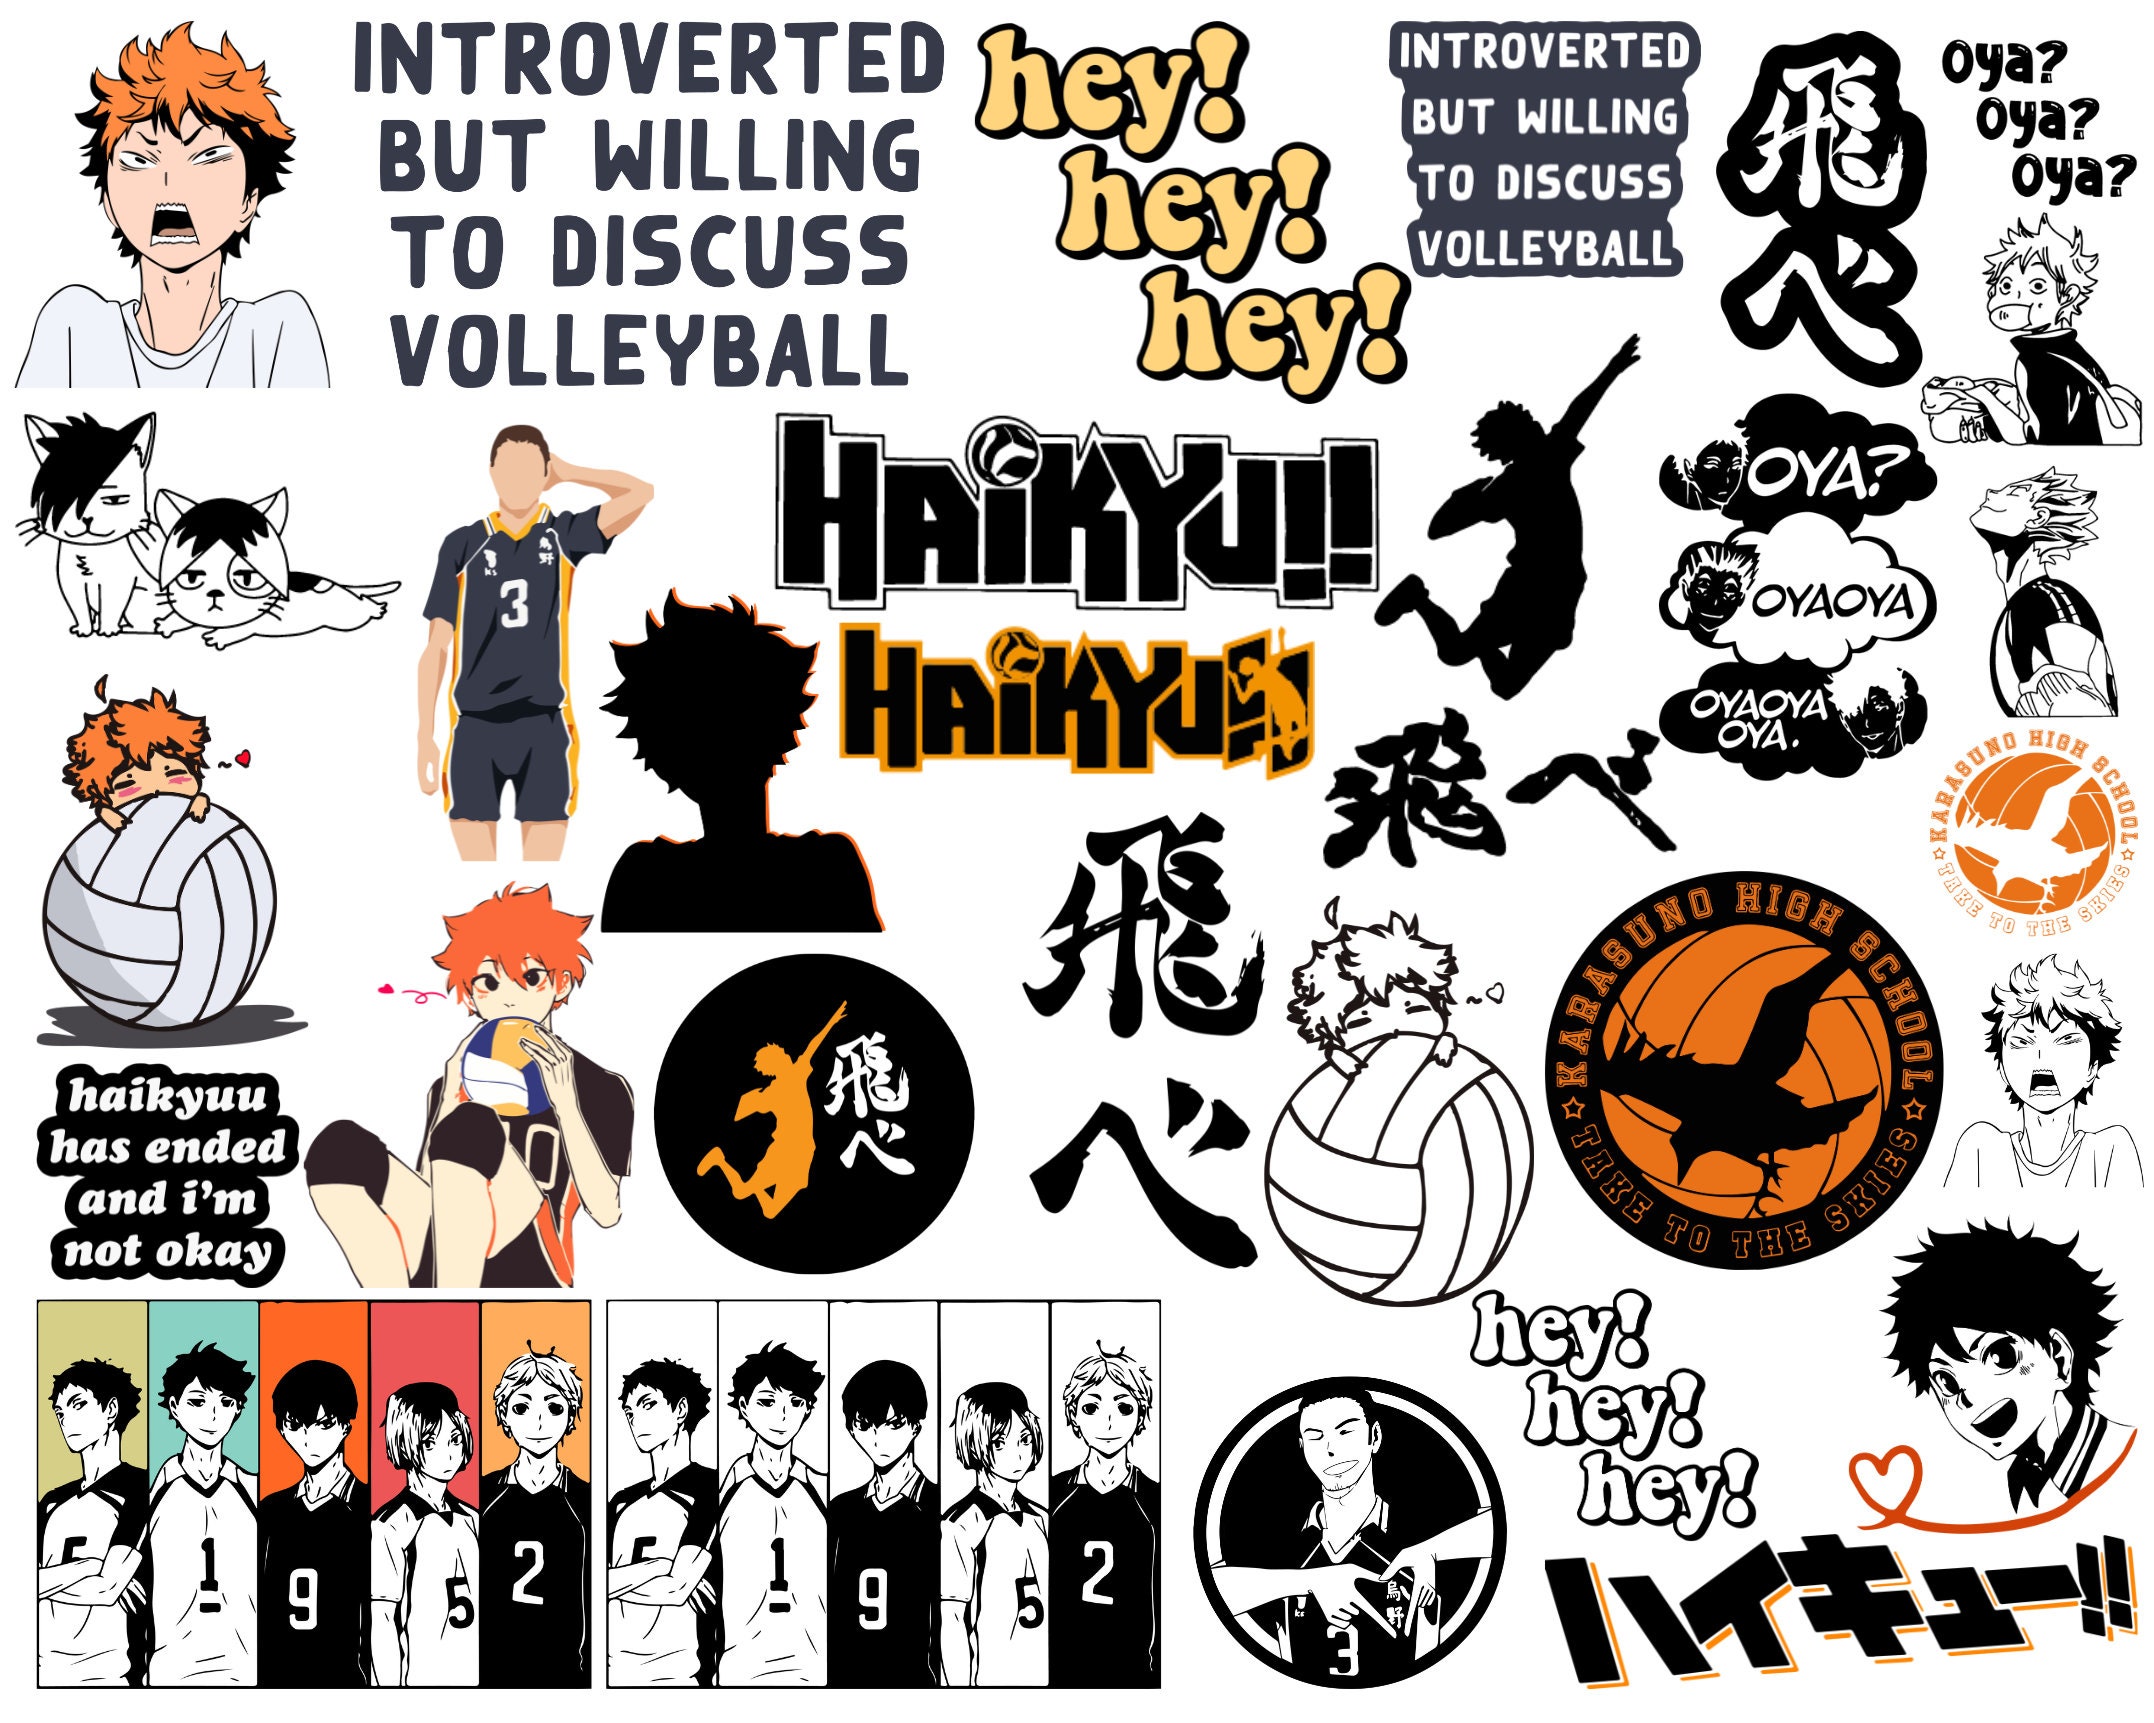 Updated character sheets of these - Haikyuu - Hey Hey Hey